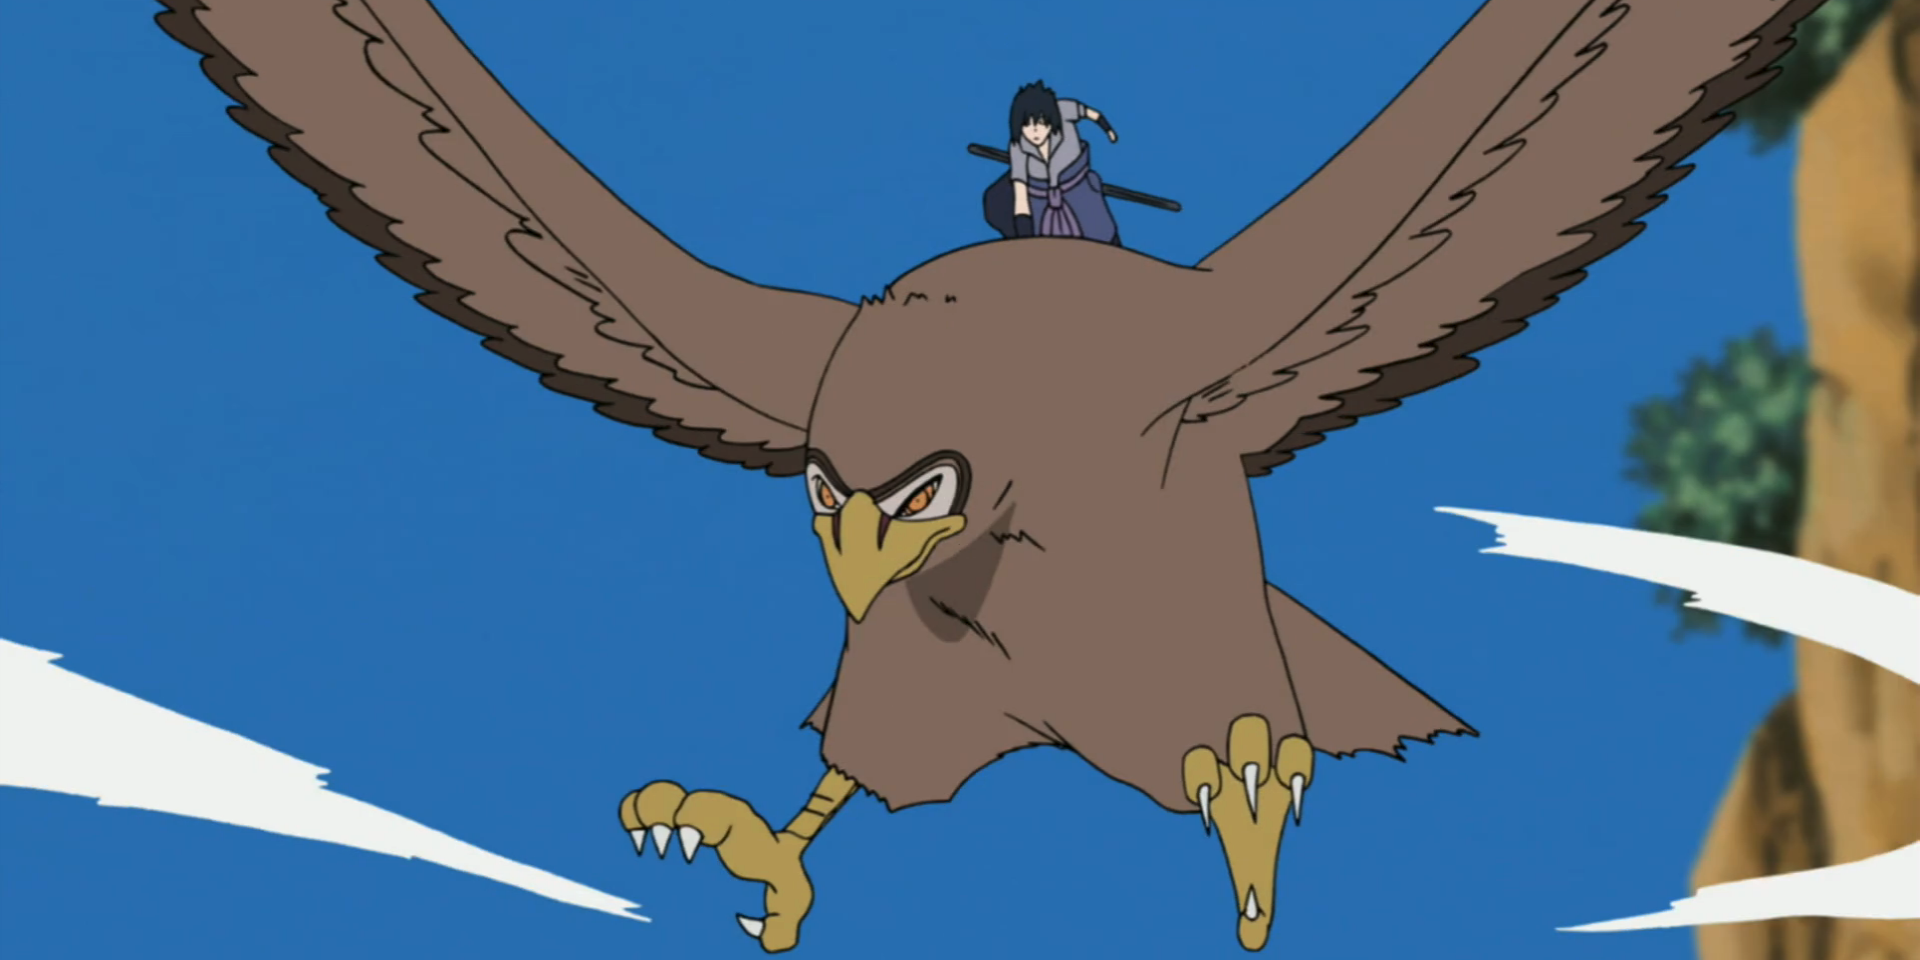 garuda the hawk carries sasuke around